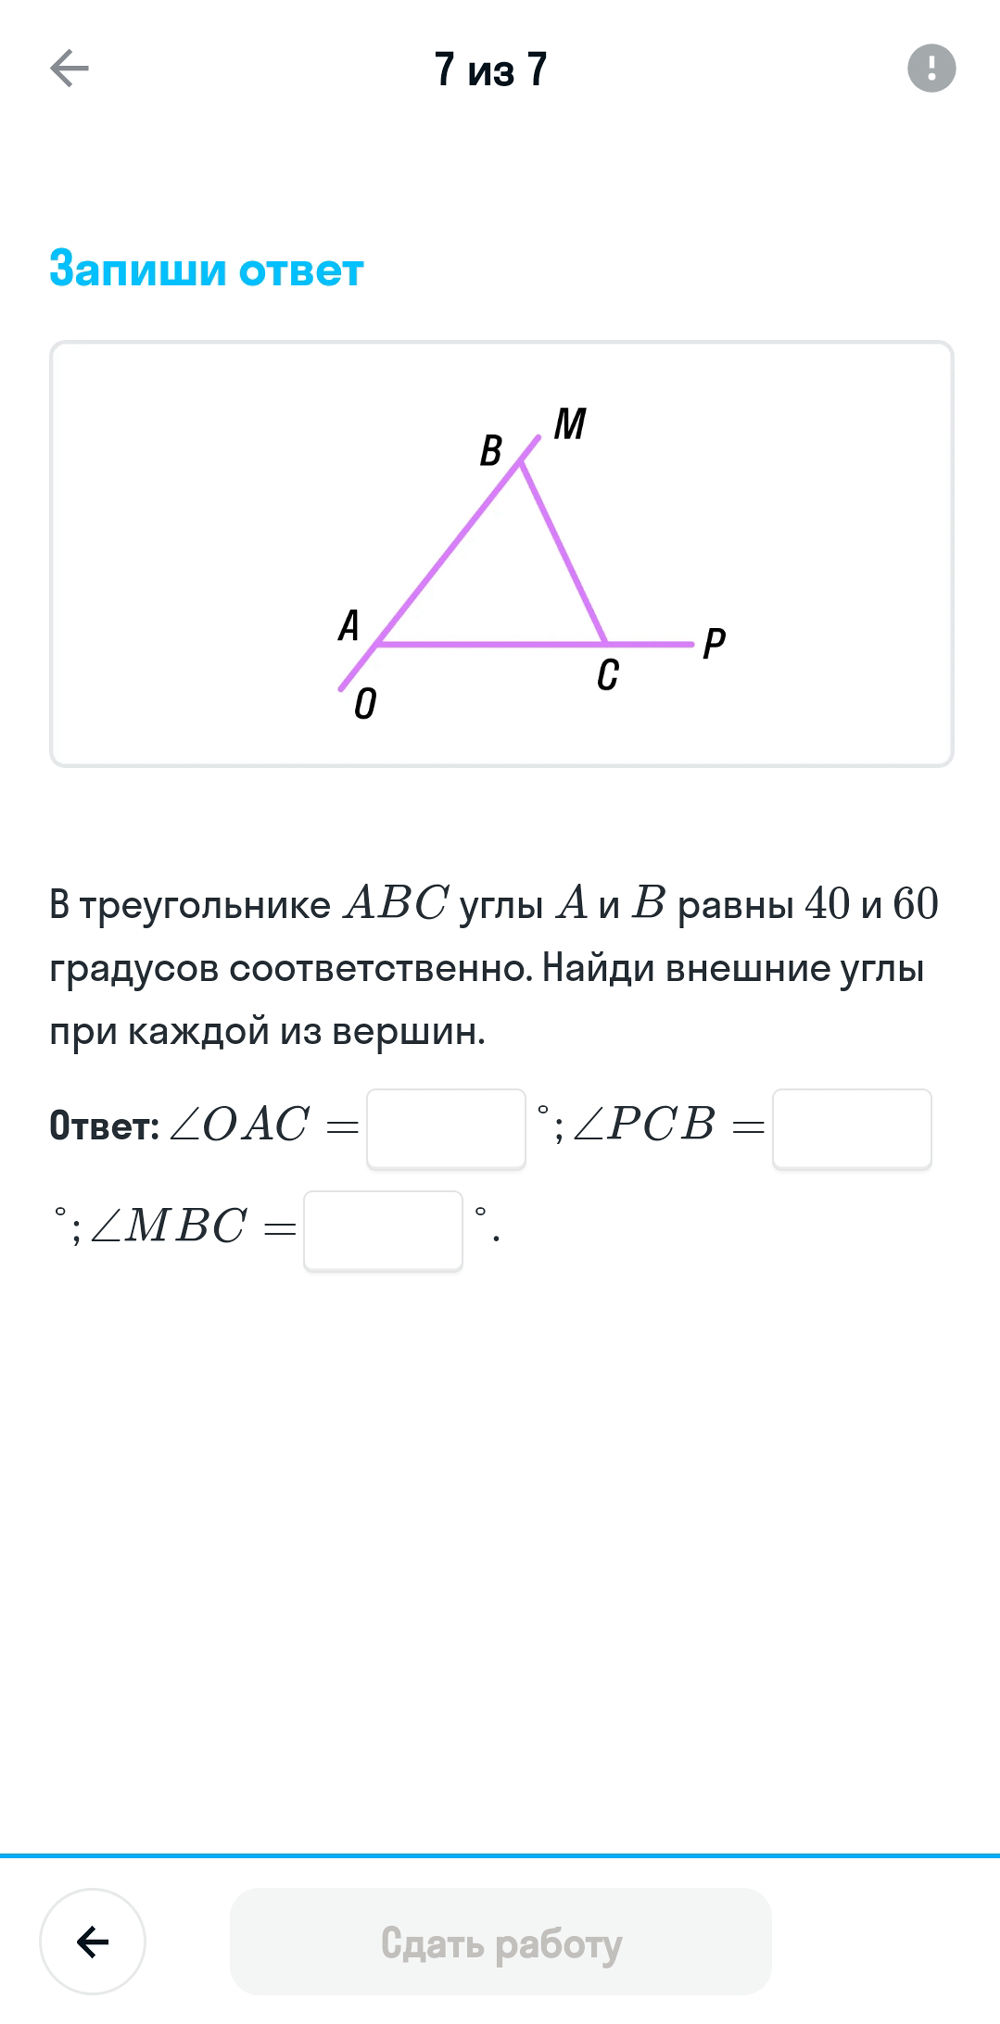 В треугольнике авс внешний угол при вершине